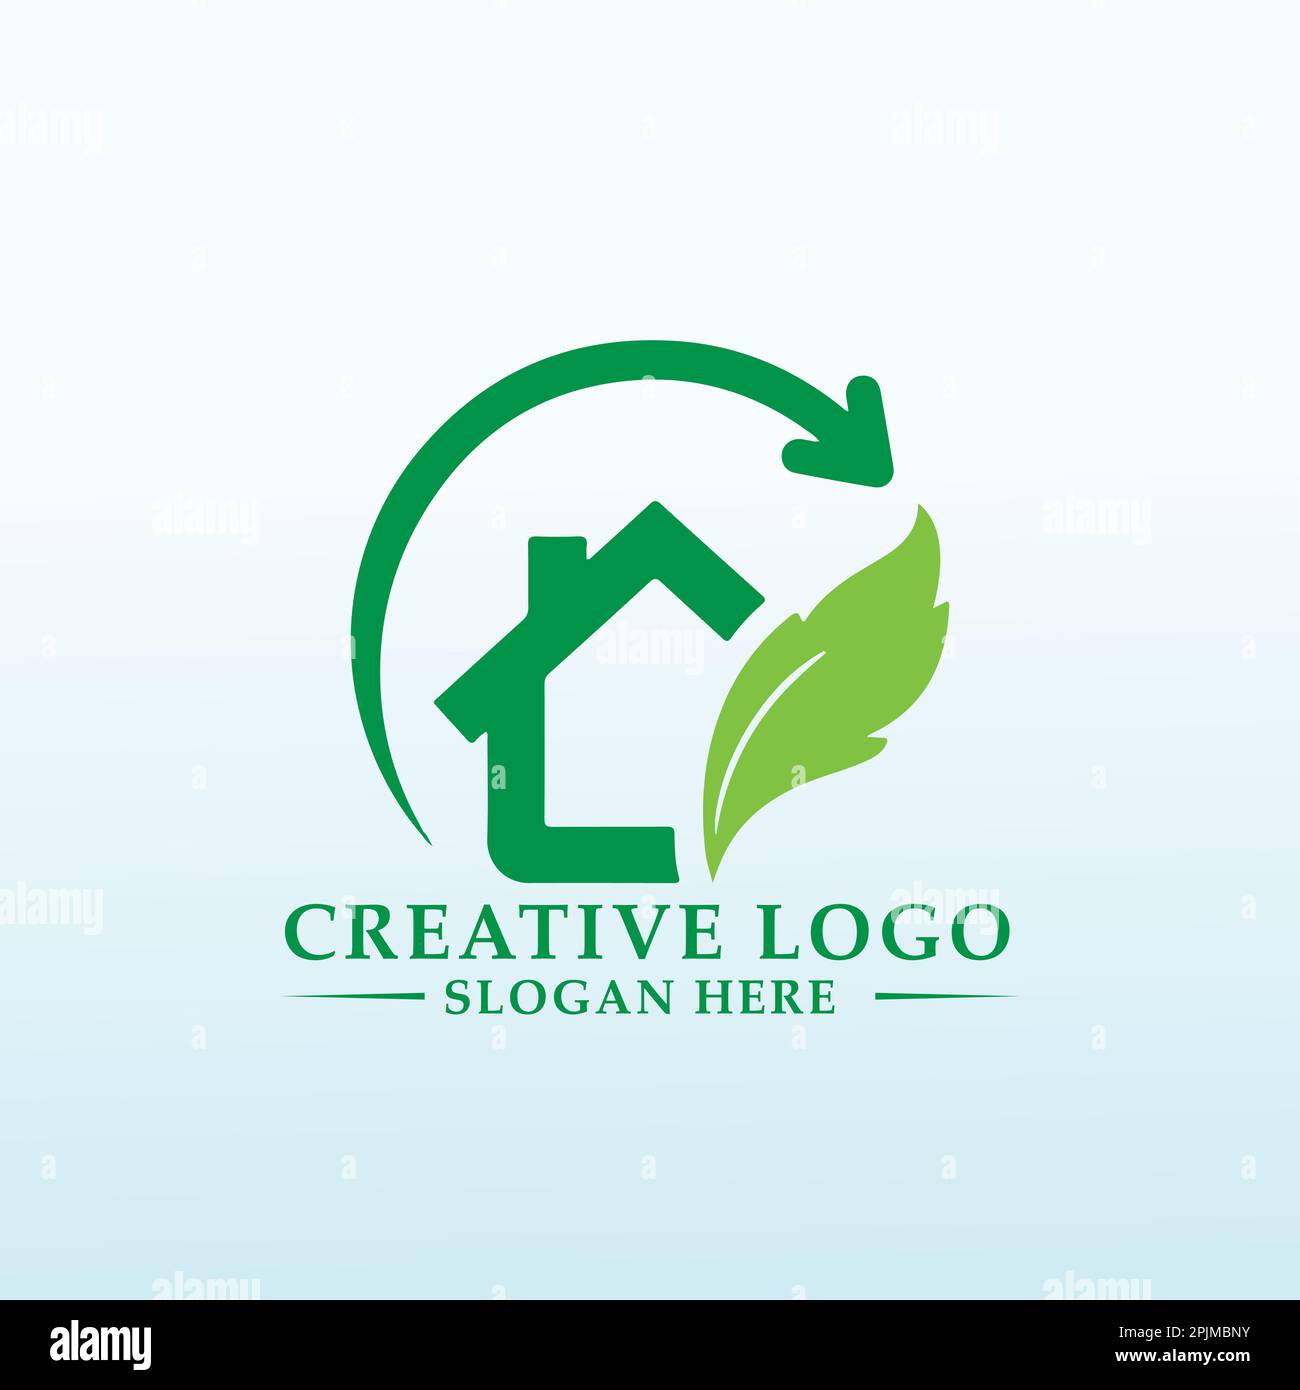 Planet entwerfen Sie ein Logo für die Gründung von Unternehmen, die umweltverträglich sind Stock Vektor